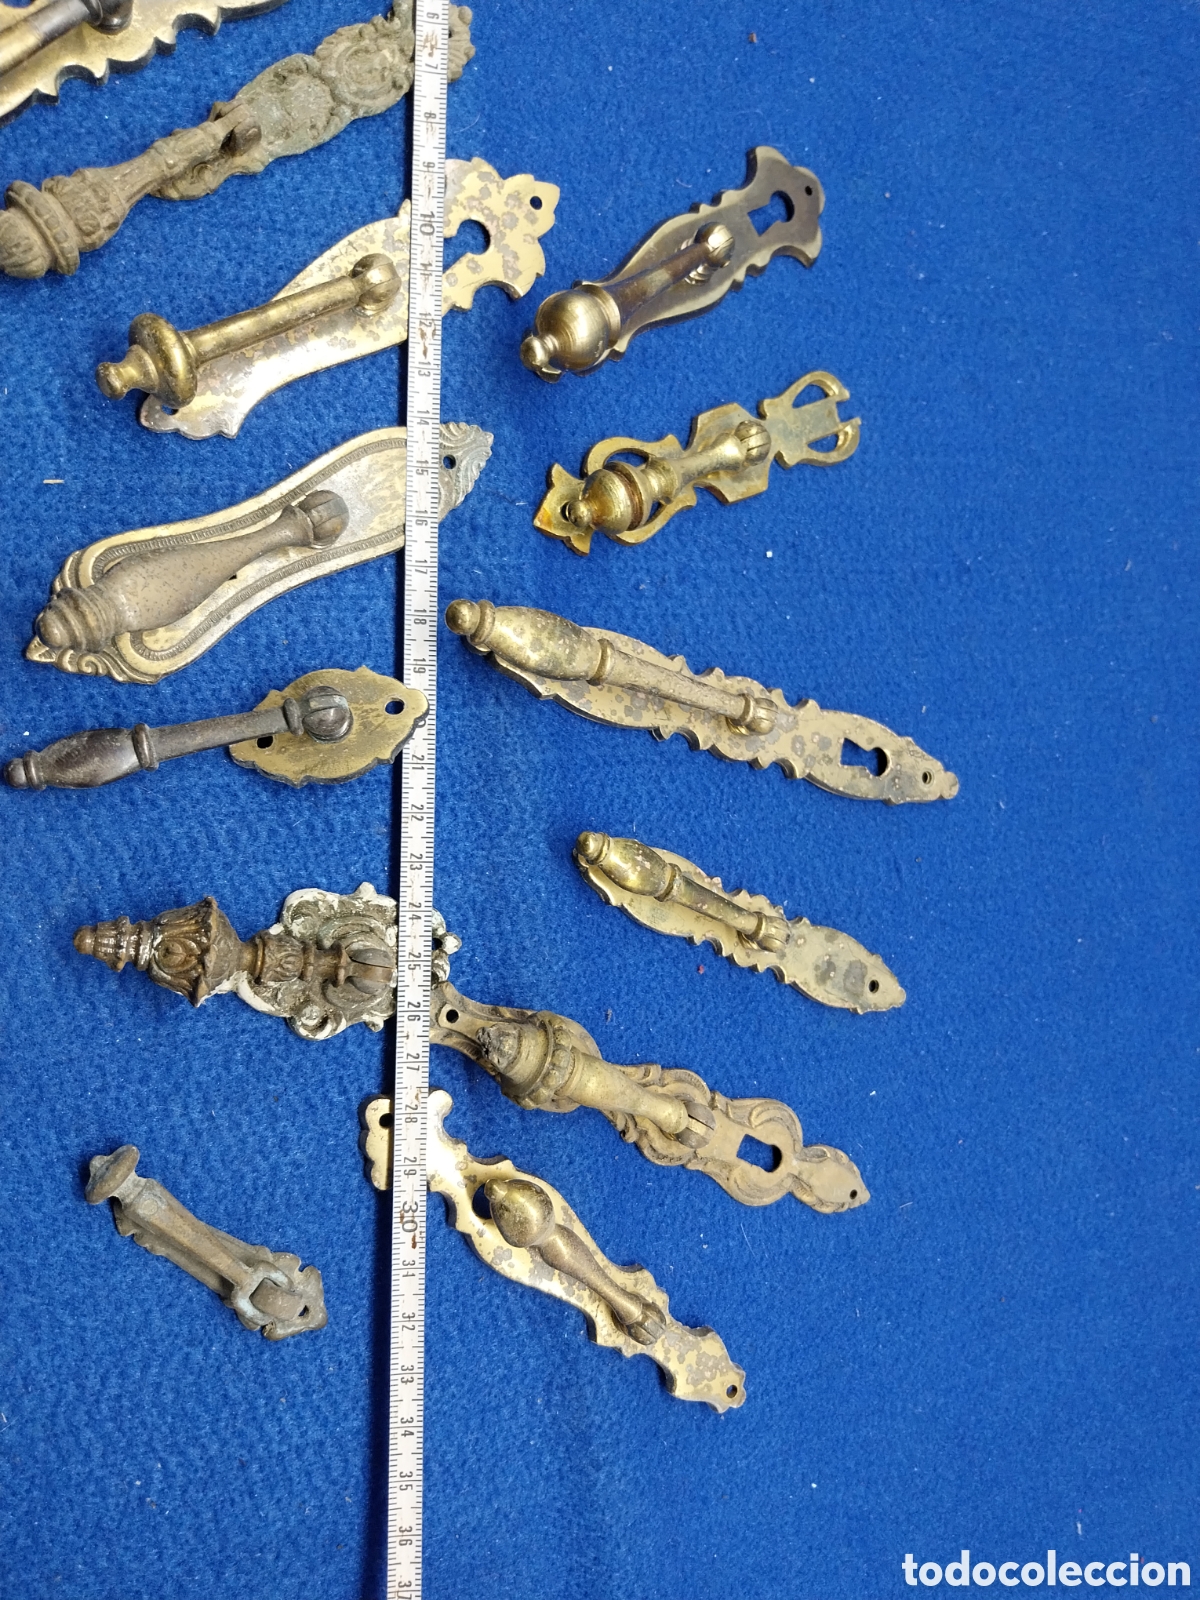 lote de 4 tiradores antiguos de bronce - Compra venta en todocoleccion